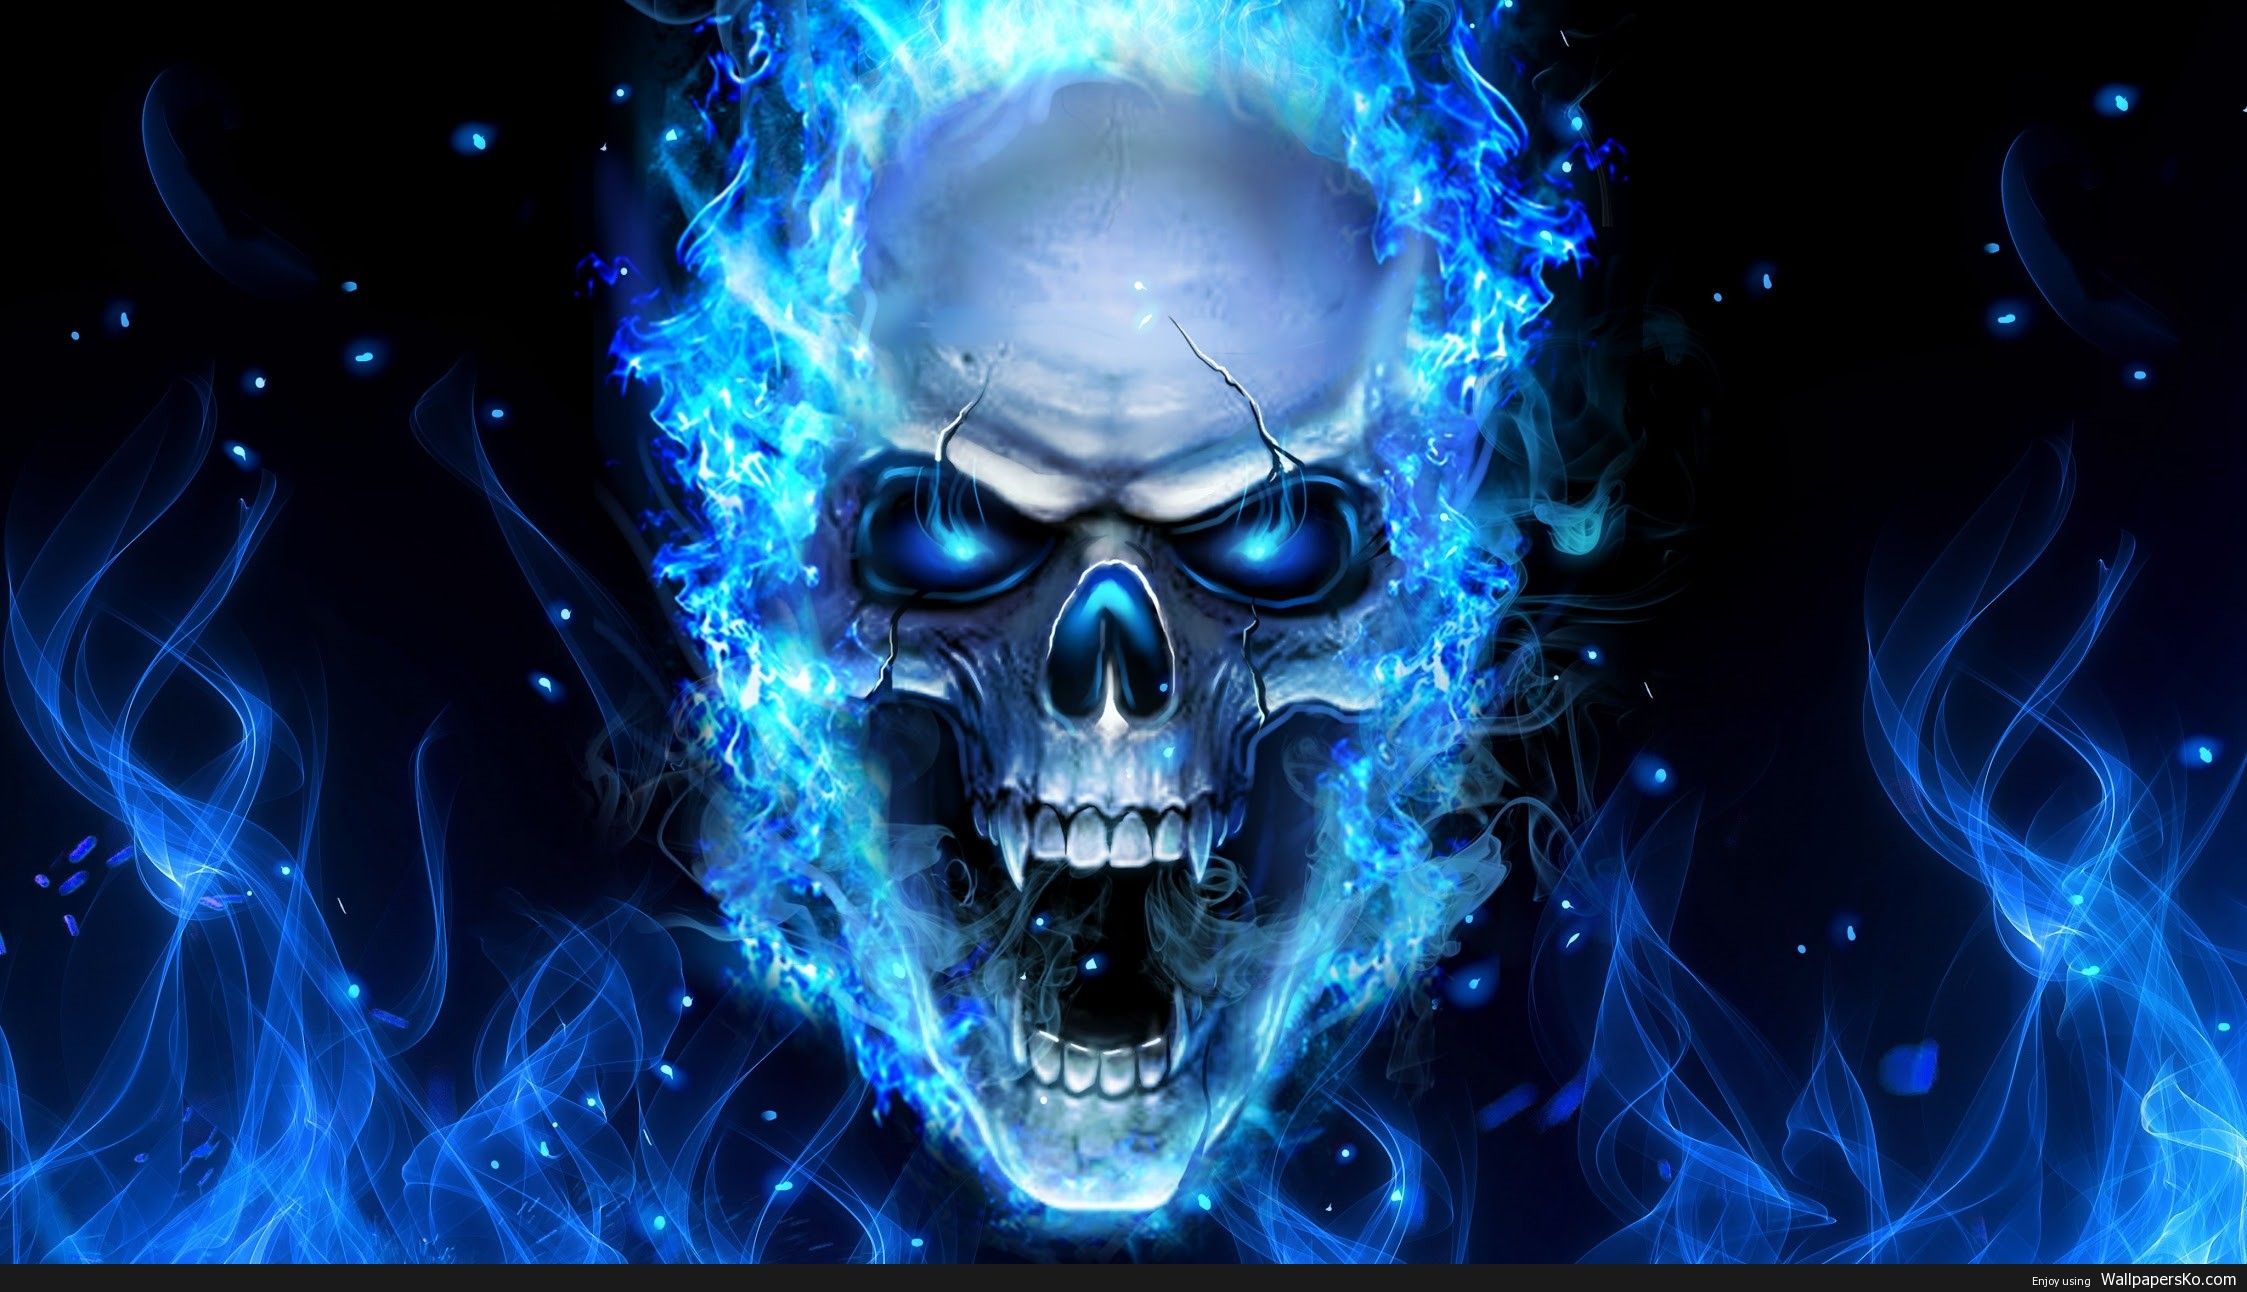 Xem ngay hình ảnh Skull Fire xanh đầy hoành tráng, thổi bùng niềm đam mê và sự phô diễn sức mạnh.